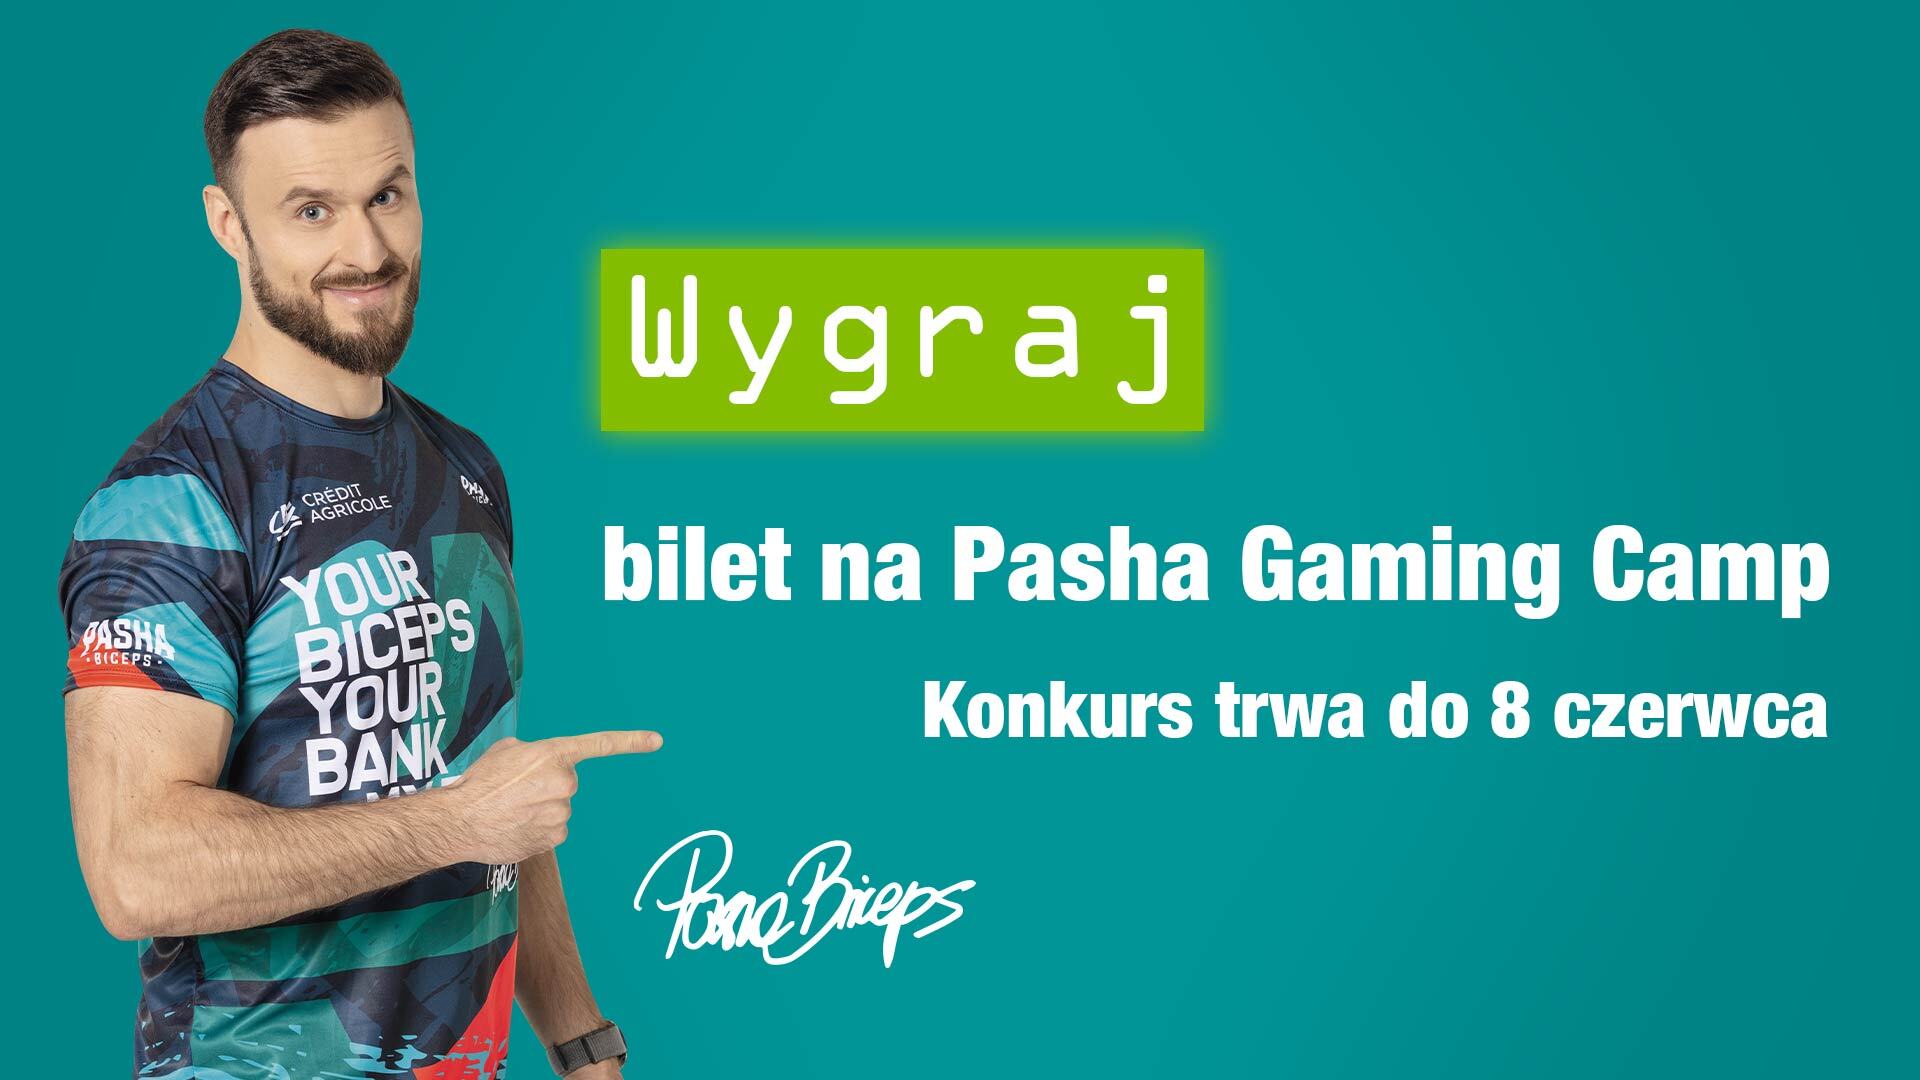 Podziel się swoją najciekawszą historią związaną z gamingiem i wygraj bilet na Pasha Gaming Camp!